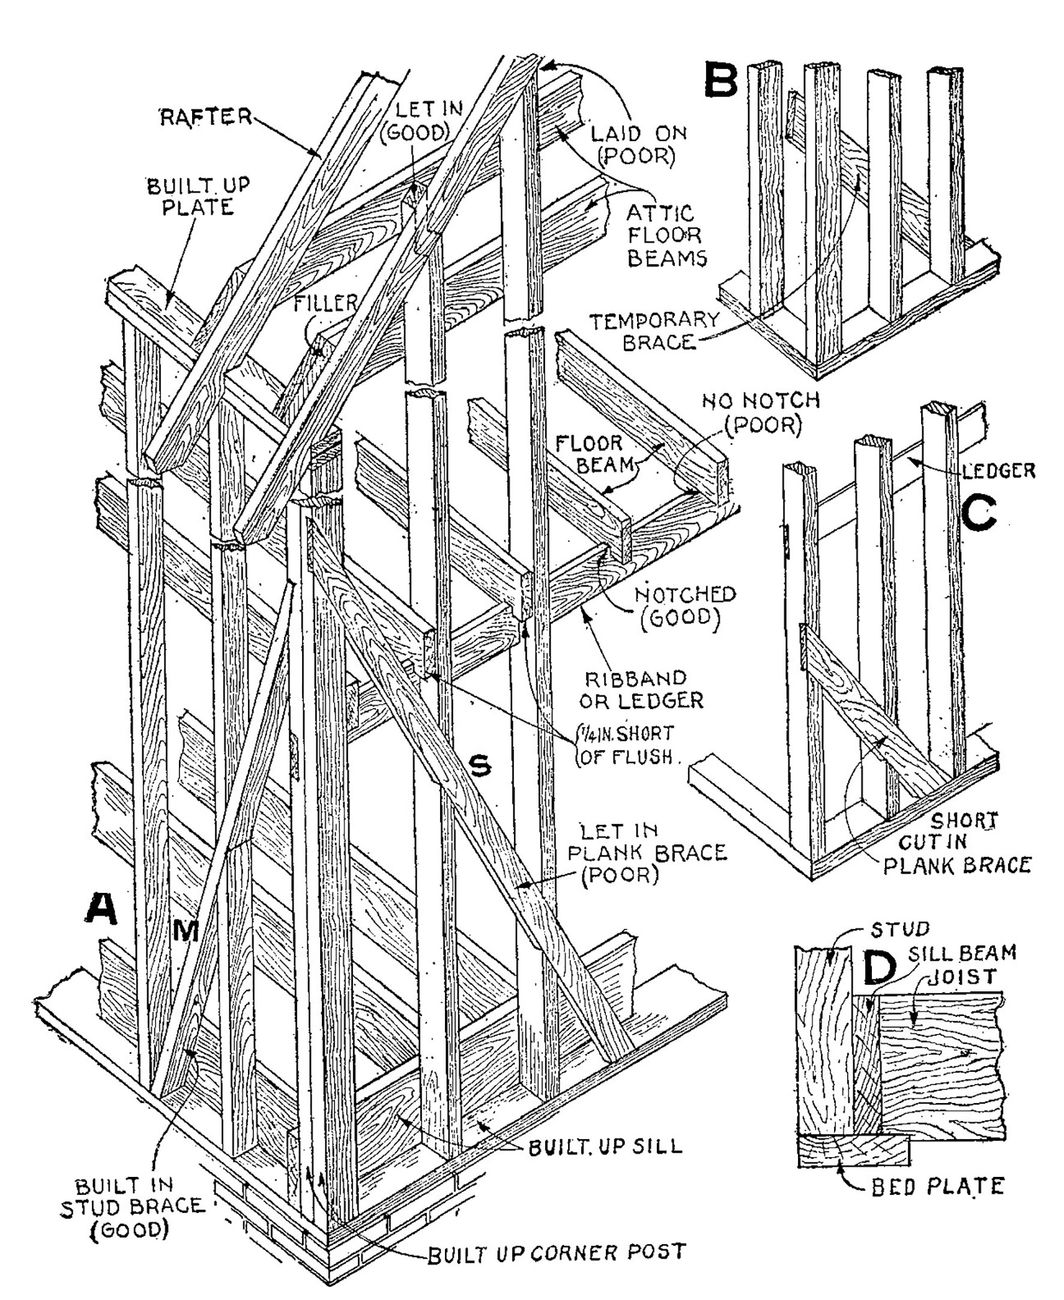 Audel's Carpenter's and Builder's Guide © 1923. Courtesy Padiglione USA 17. Mostra internazionale di Architettura, Venezia 2021